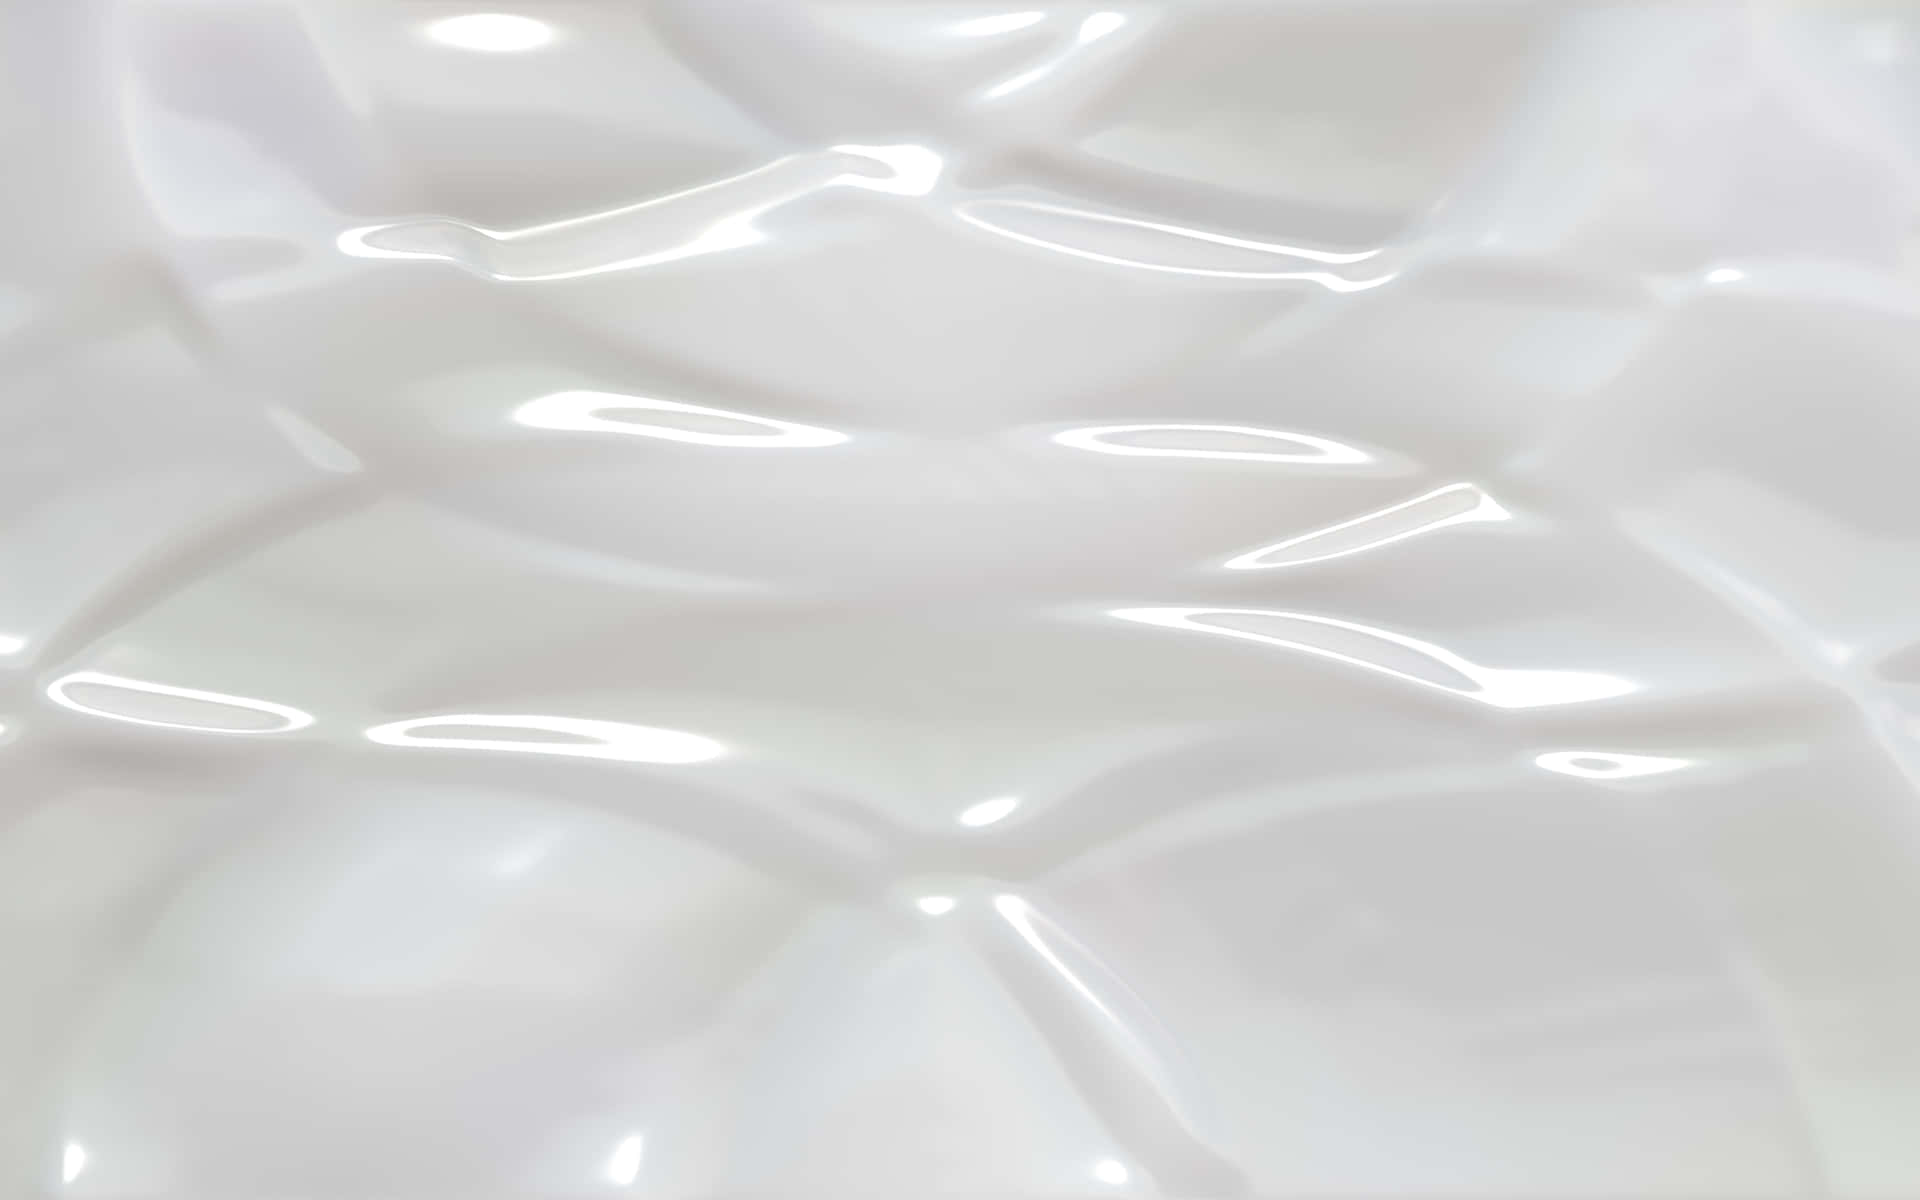 shiny white plastic texture